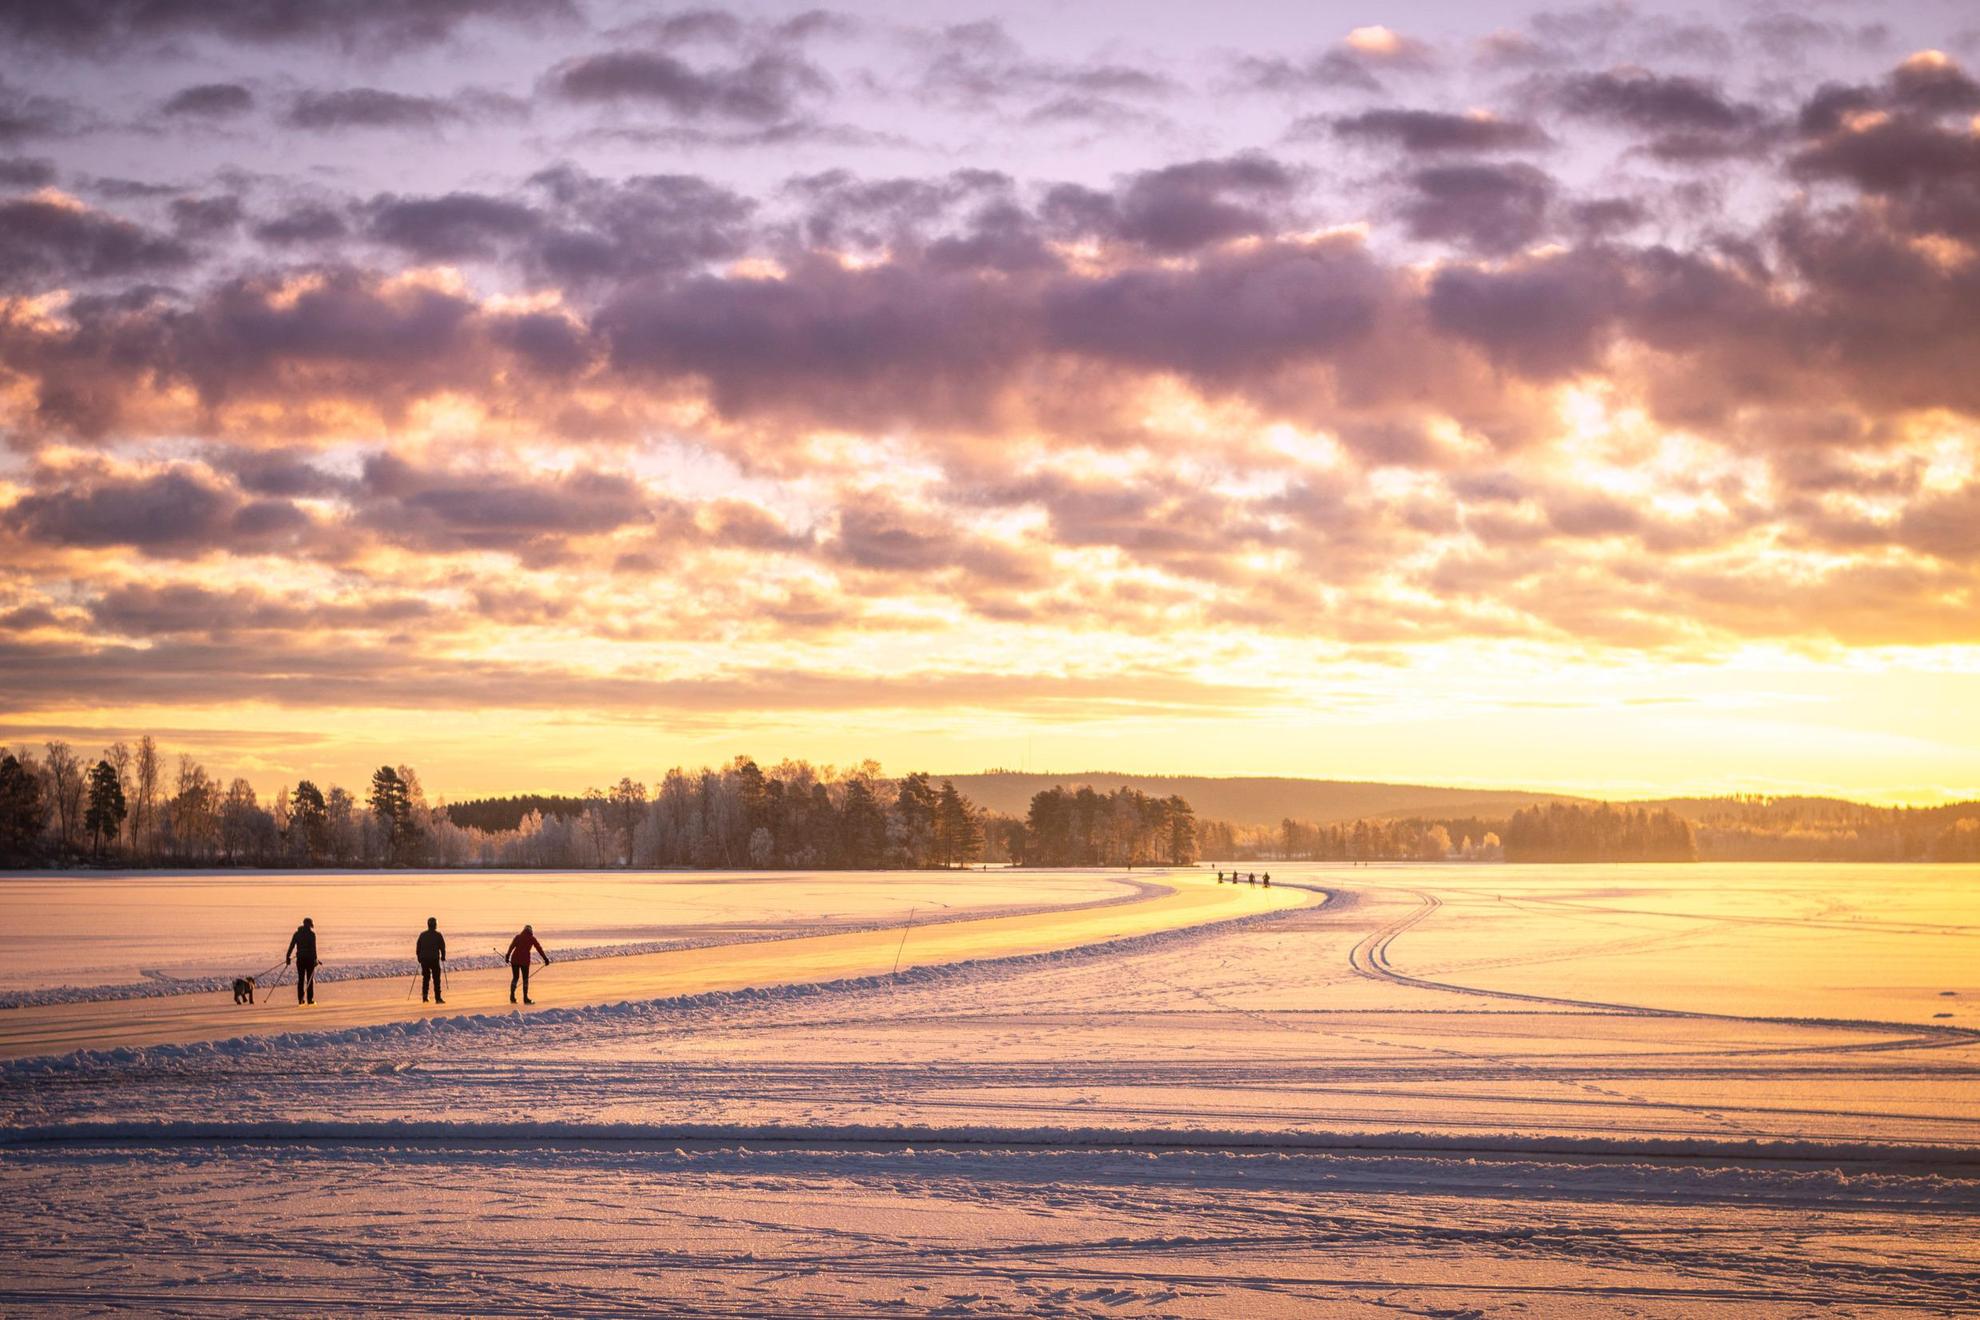 Silhouette de trois personnes en train de patiner sur un lac gelé. Le soleil brille d'une lueur orange.